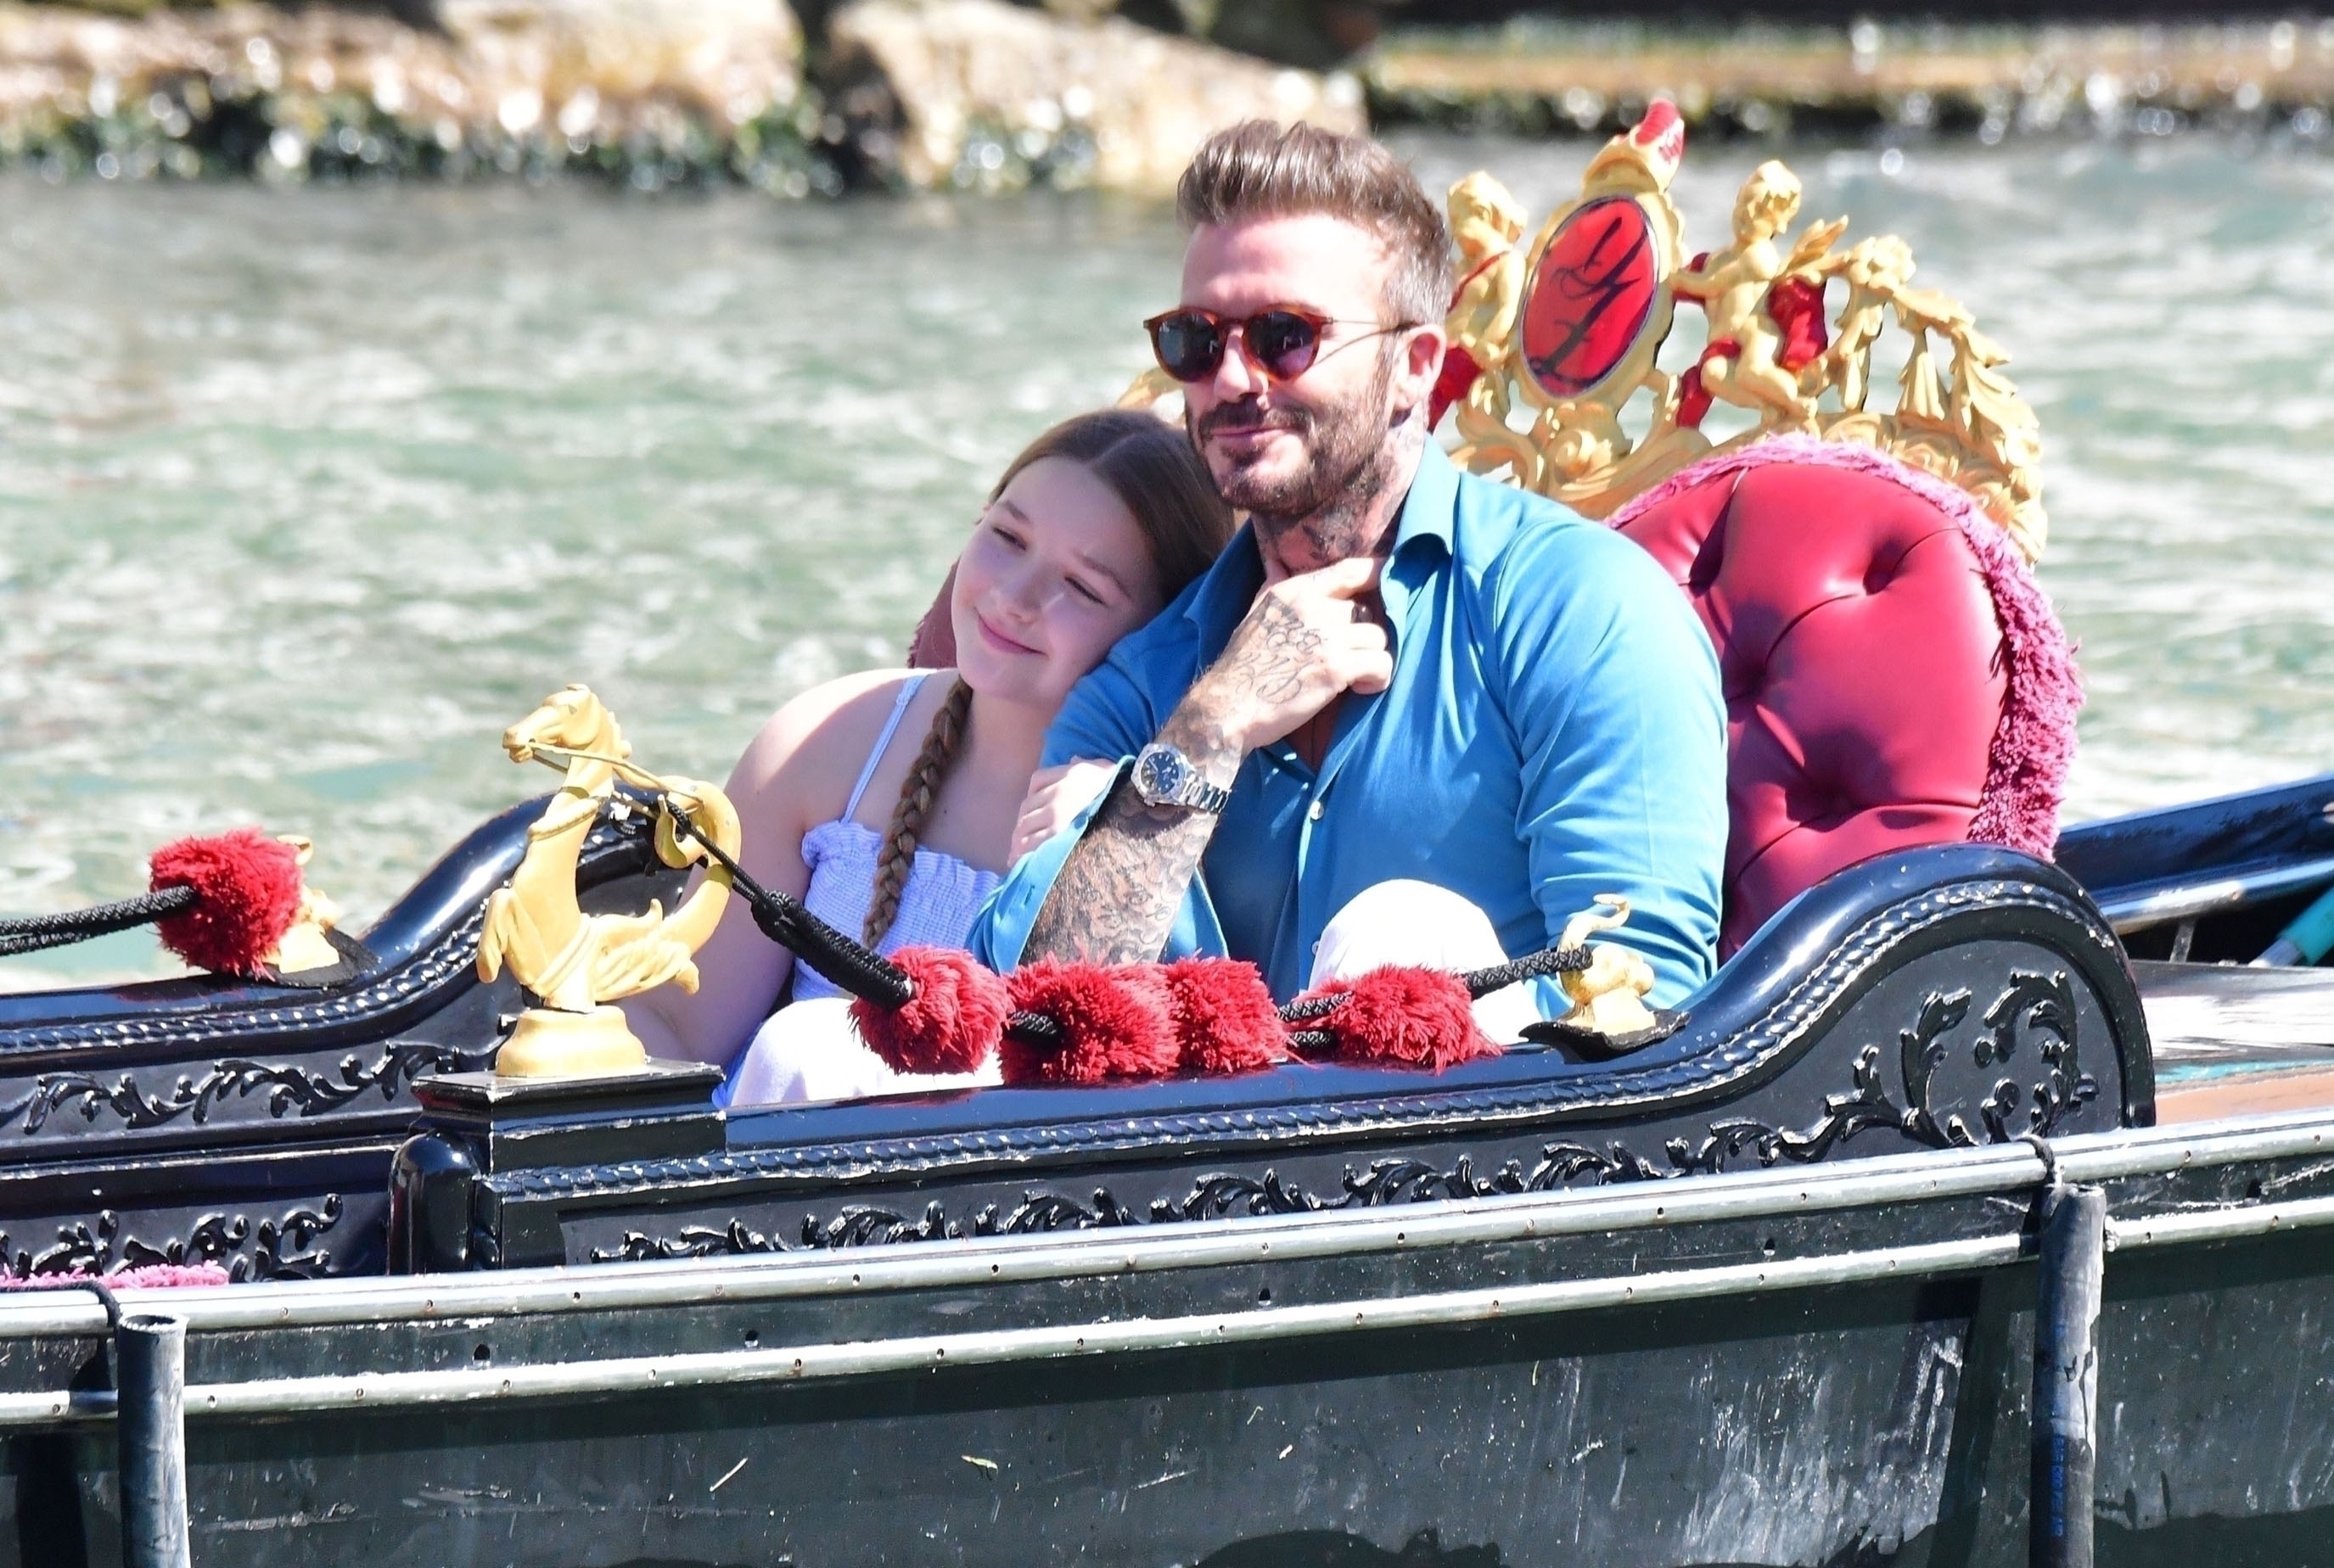 Vacaciones en familia. David Beckham dio un divertido paseo sobre una góndola en Venecia, Italia, durante sus días de descanso junto a su hija Harper. Ambos disfrutaron de un día de sol (Fotos: The Grosby Group)